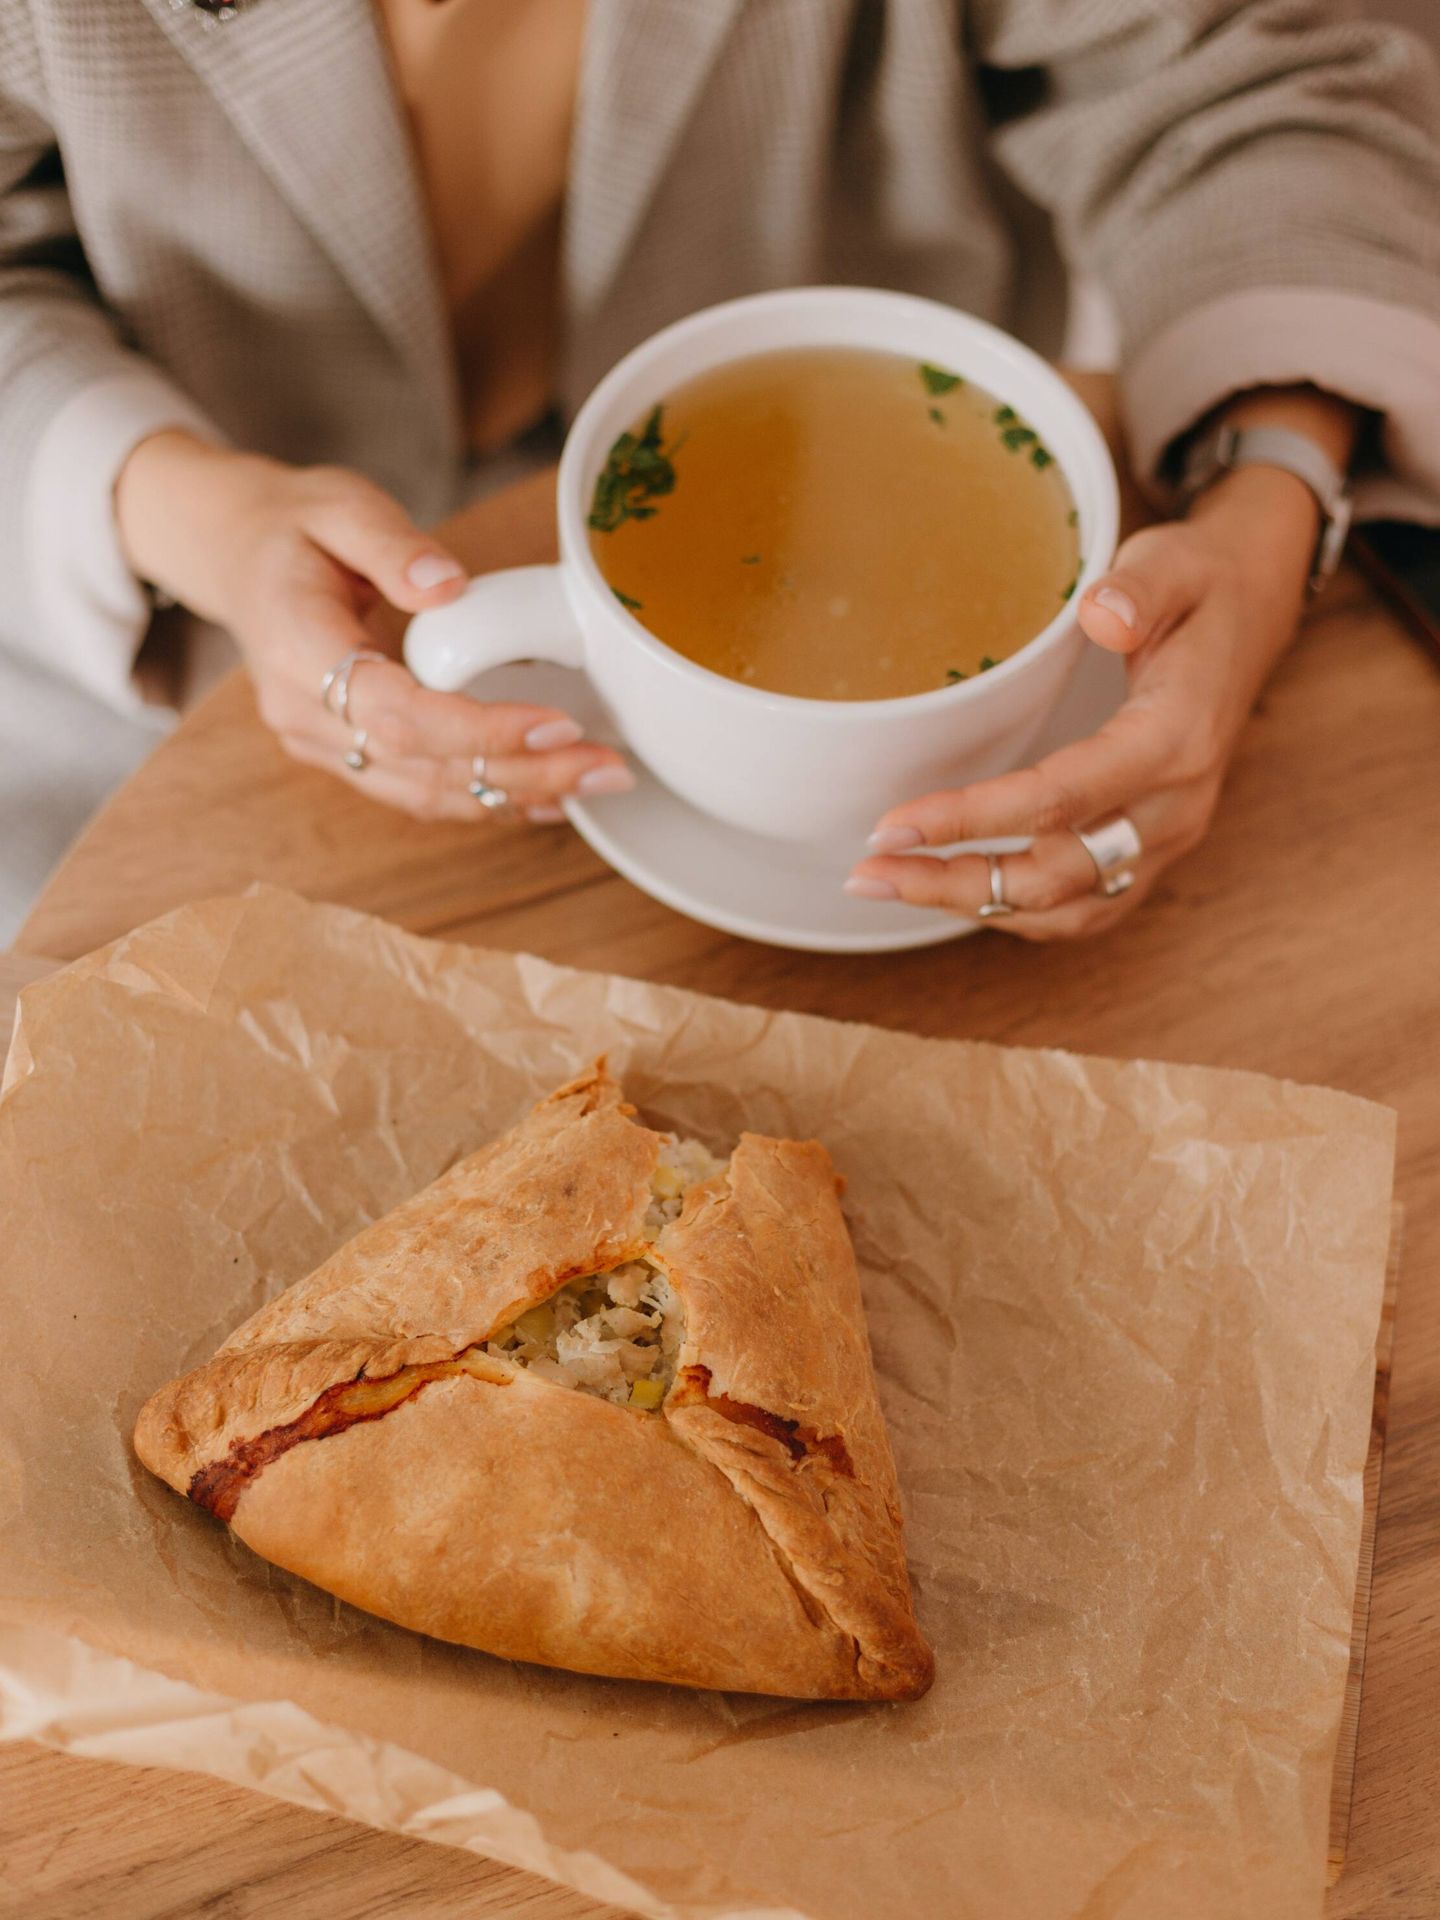 La sopa tiene beneficios probados científicamente para paliar el resfriado. (Pexels/Alina Matveycheva)